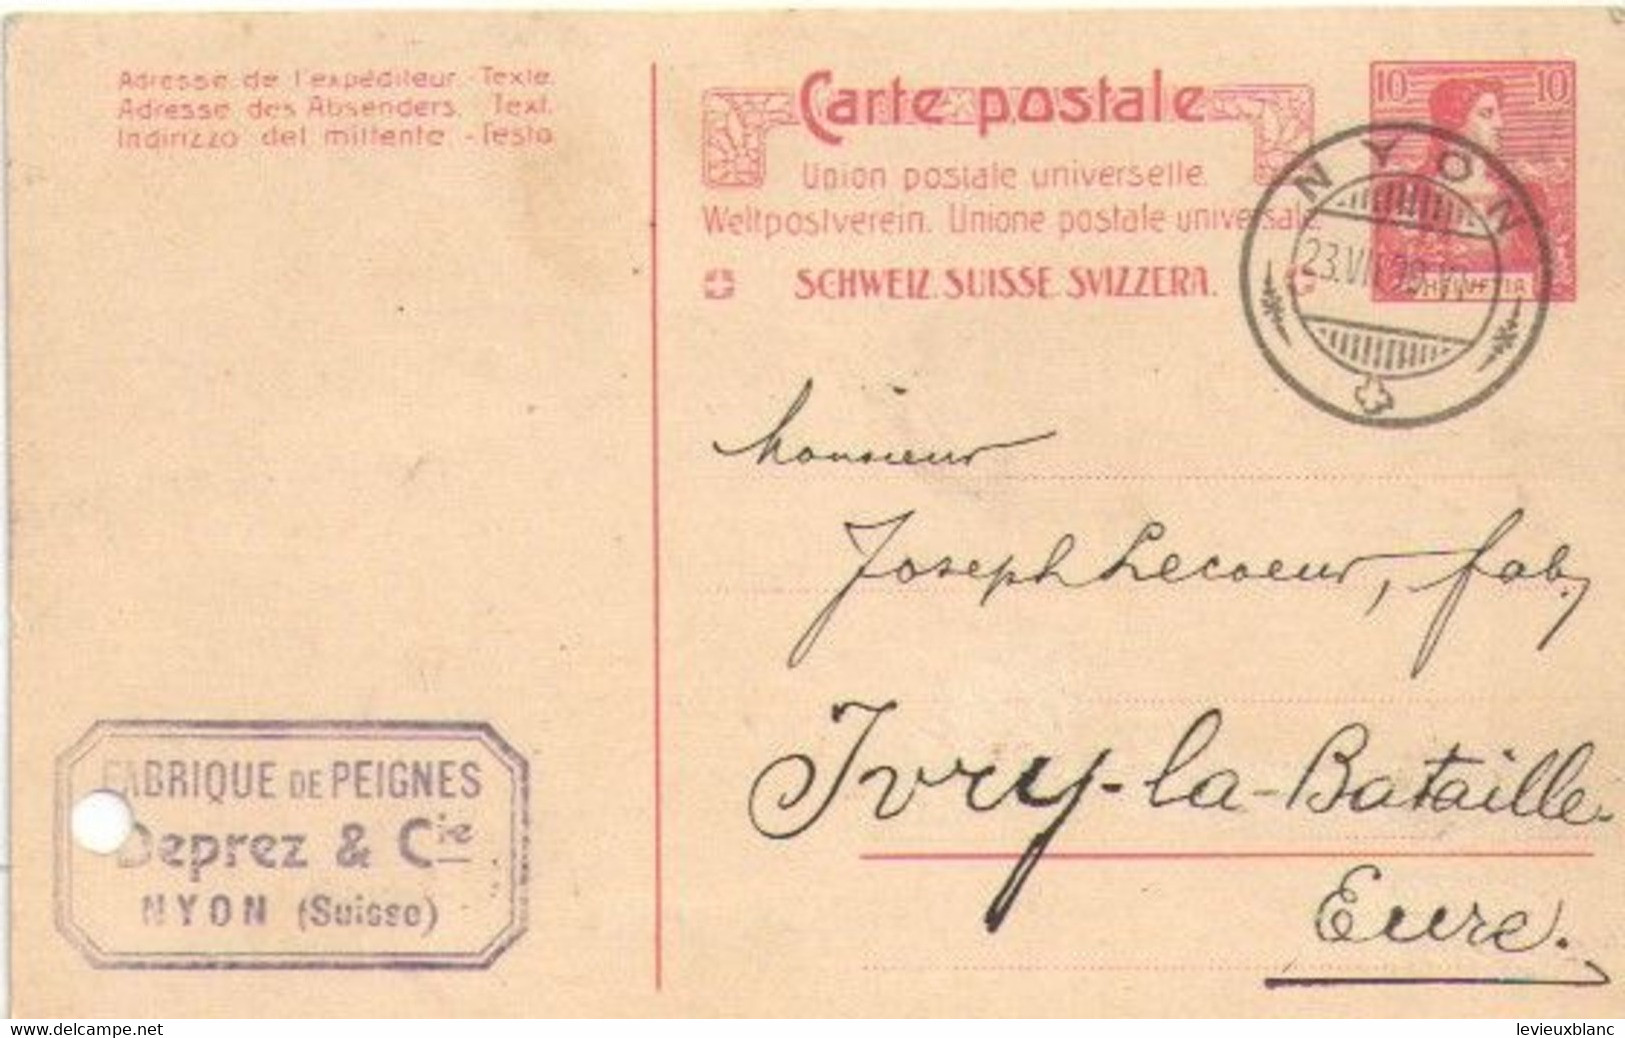 Fabrication De Peignes En Ivoire/Joseph LECOEUR/Ivry La Bataille/Commande/DEPREZ & Cie / NYON /SUISSE/1909     FACT495 - Schweiz